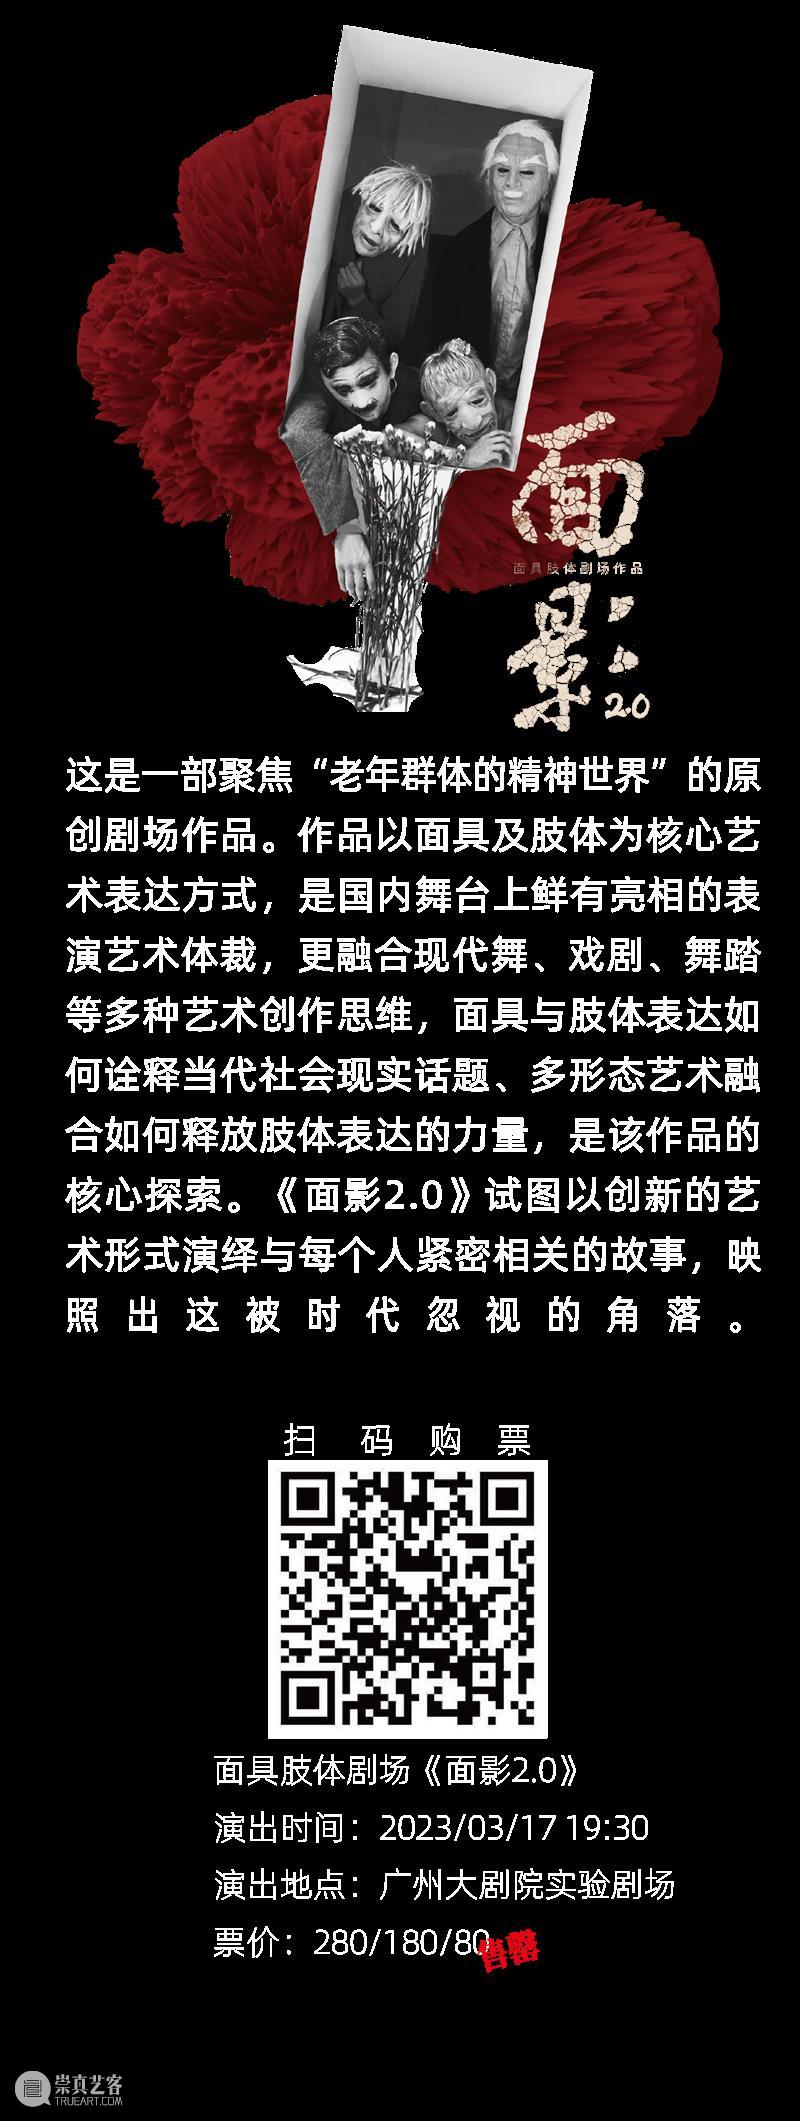 侯莹x肖智仁丨关于创作的一切  广州大剧院 崇真艺客